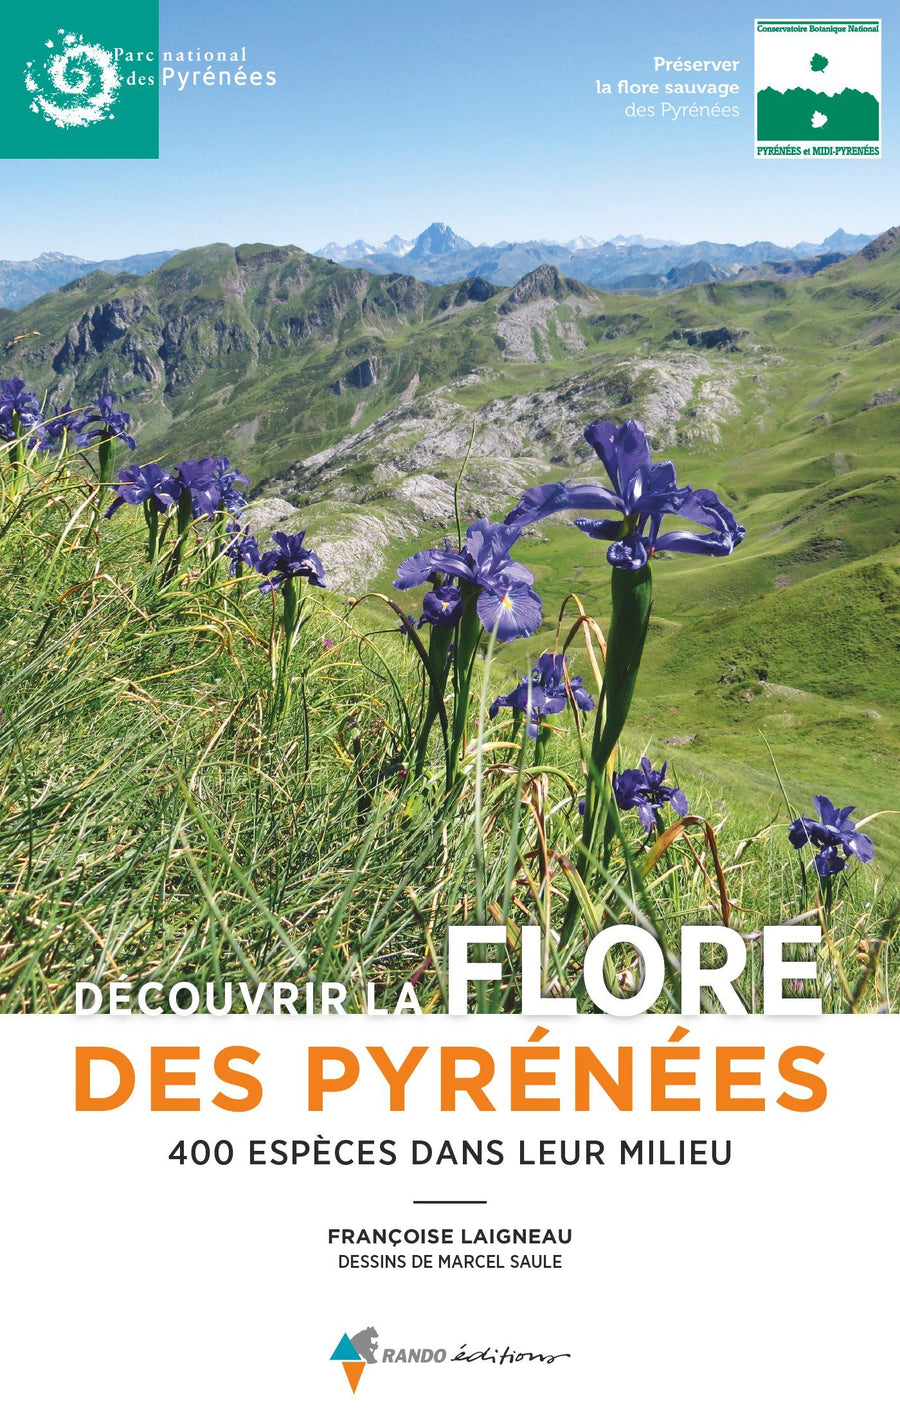 Découvrir la flore des Pyrénées : 400 espèces dans leur milieu | Rando Editions guide pratique Rando Editions 